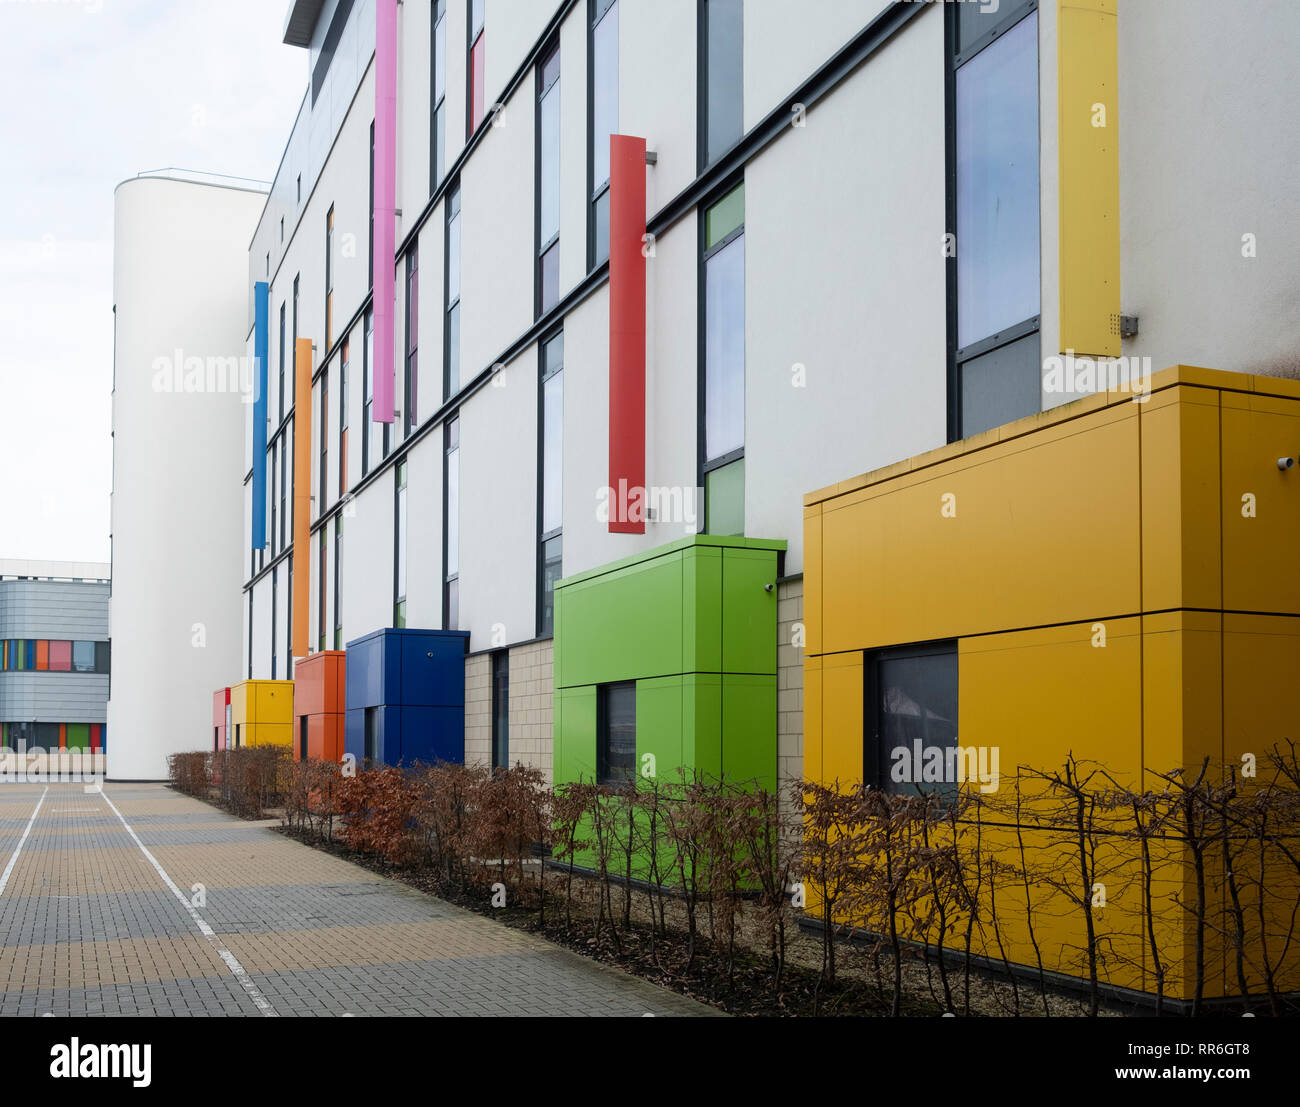 Außenansicht des neuen königlichen Krankenhaus für Kinder in Glasgow, Schottland, Großbritannien Stockfoto